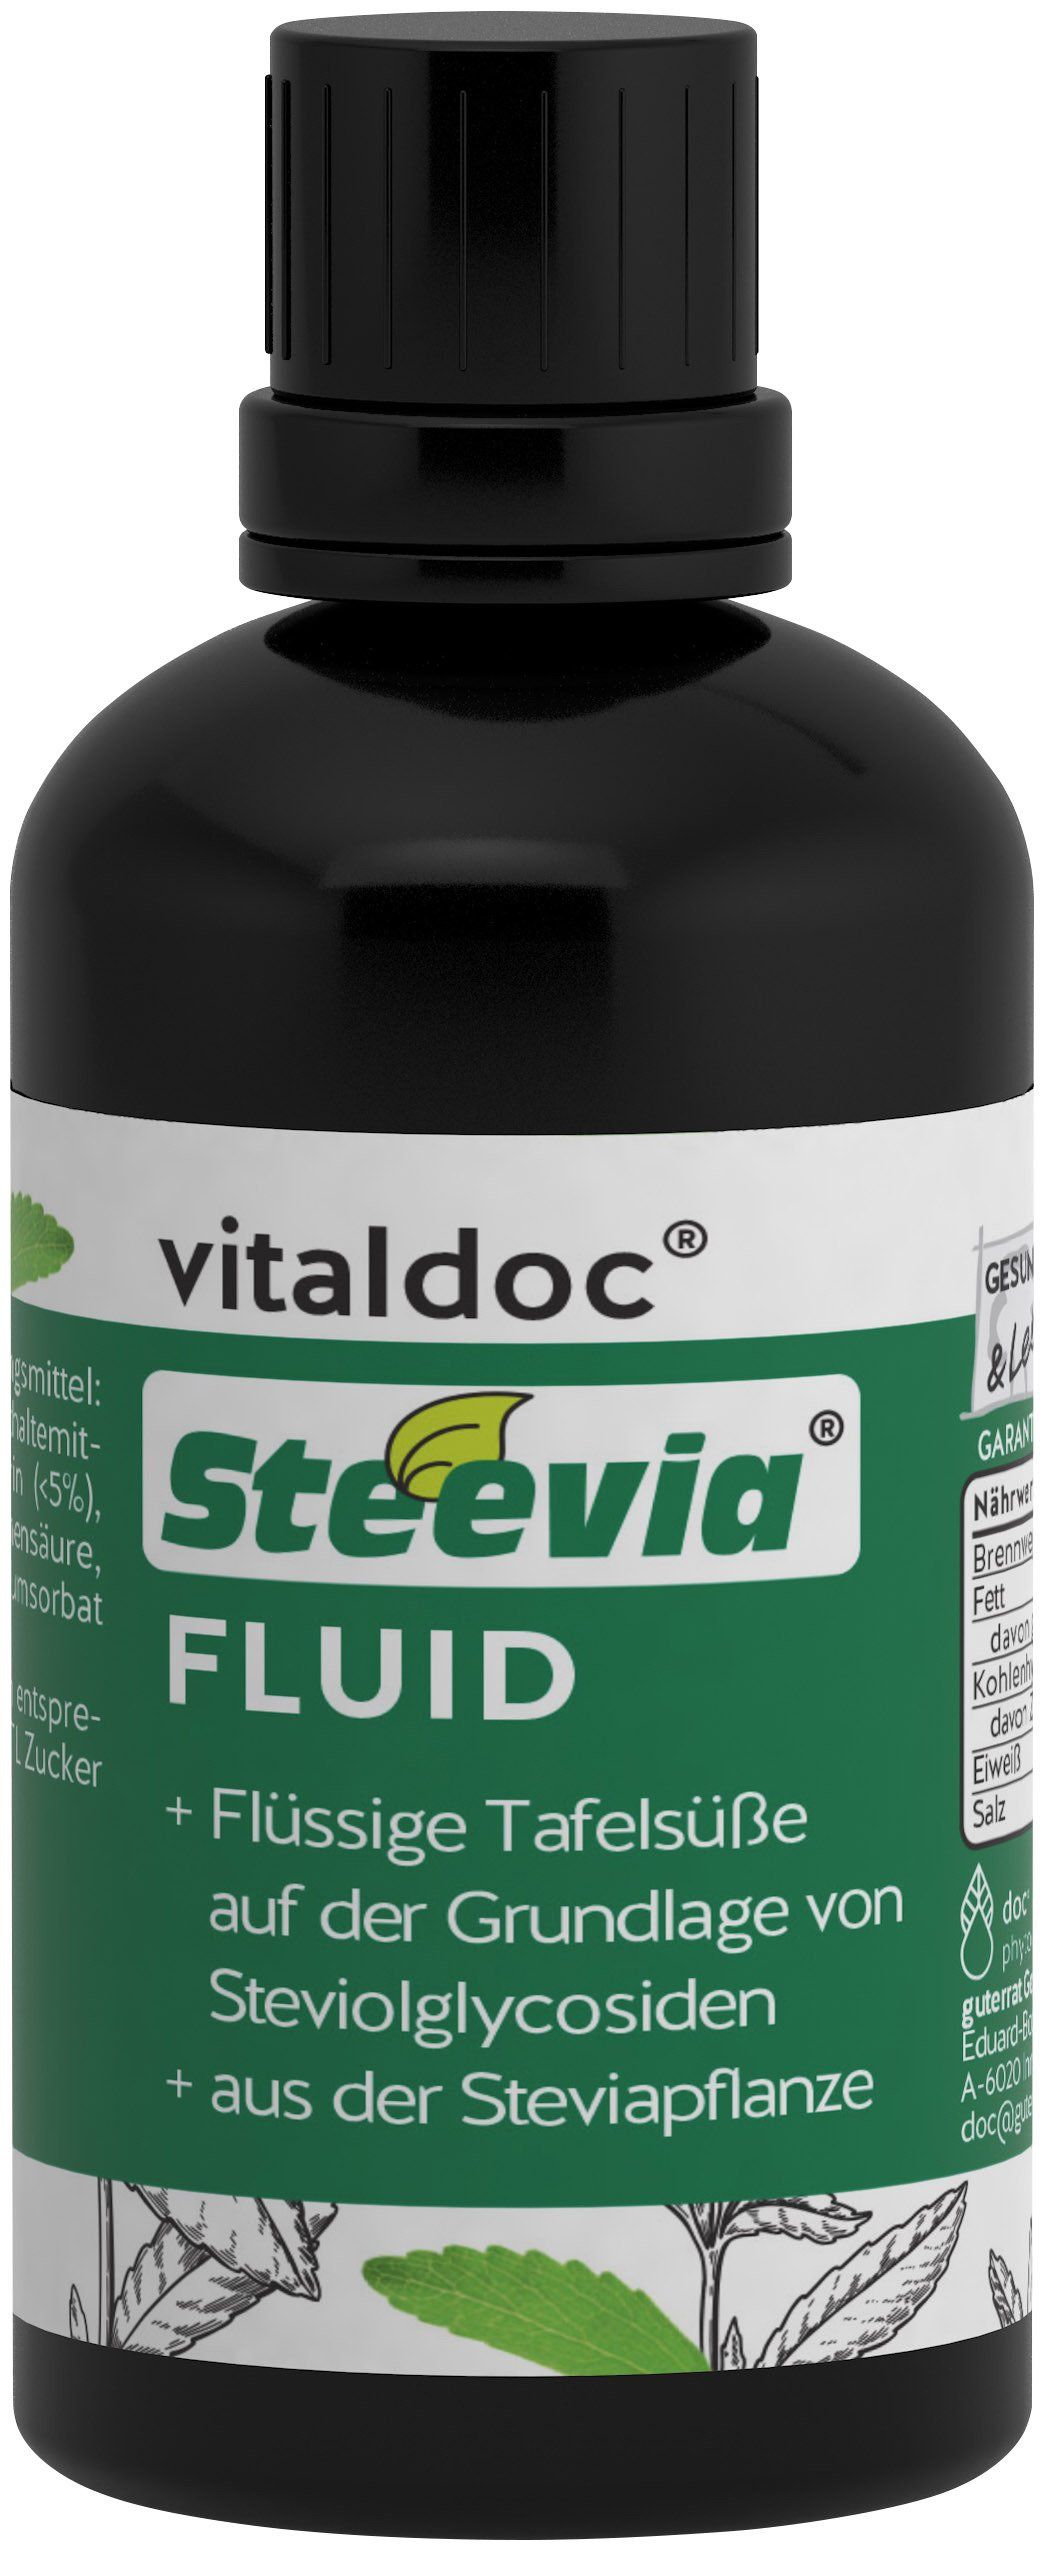 vitaldoc® Steevia FLUID